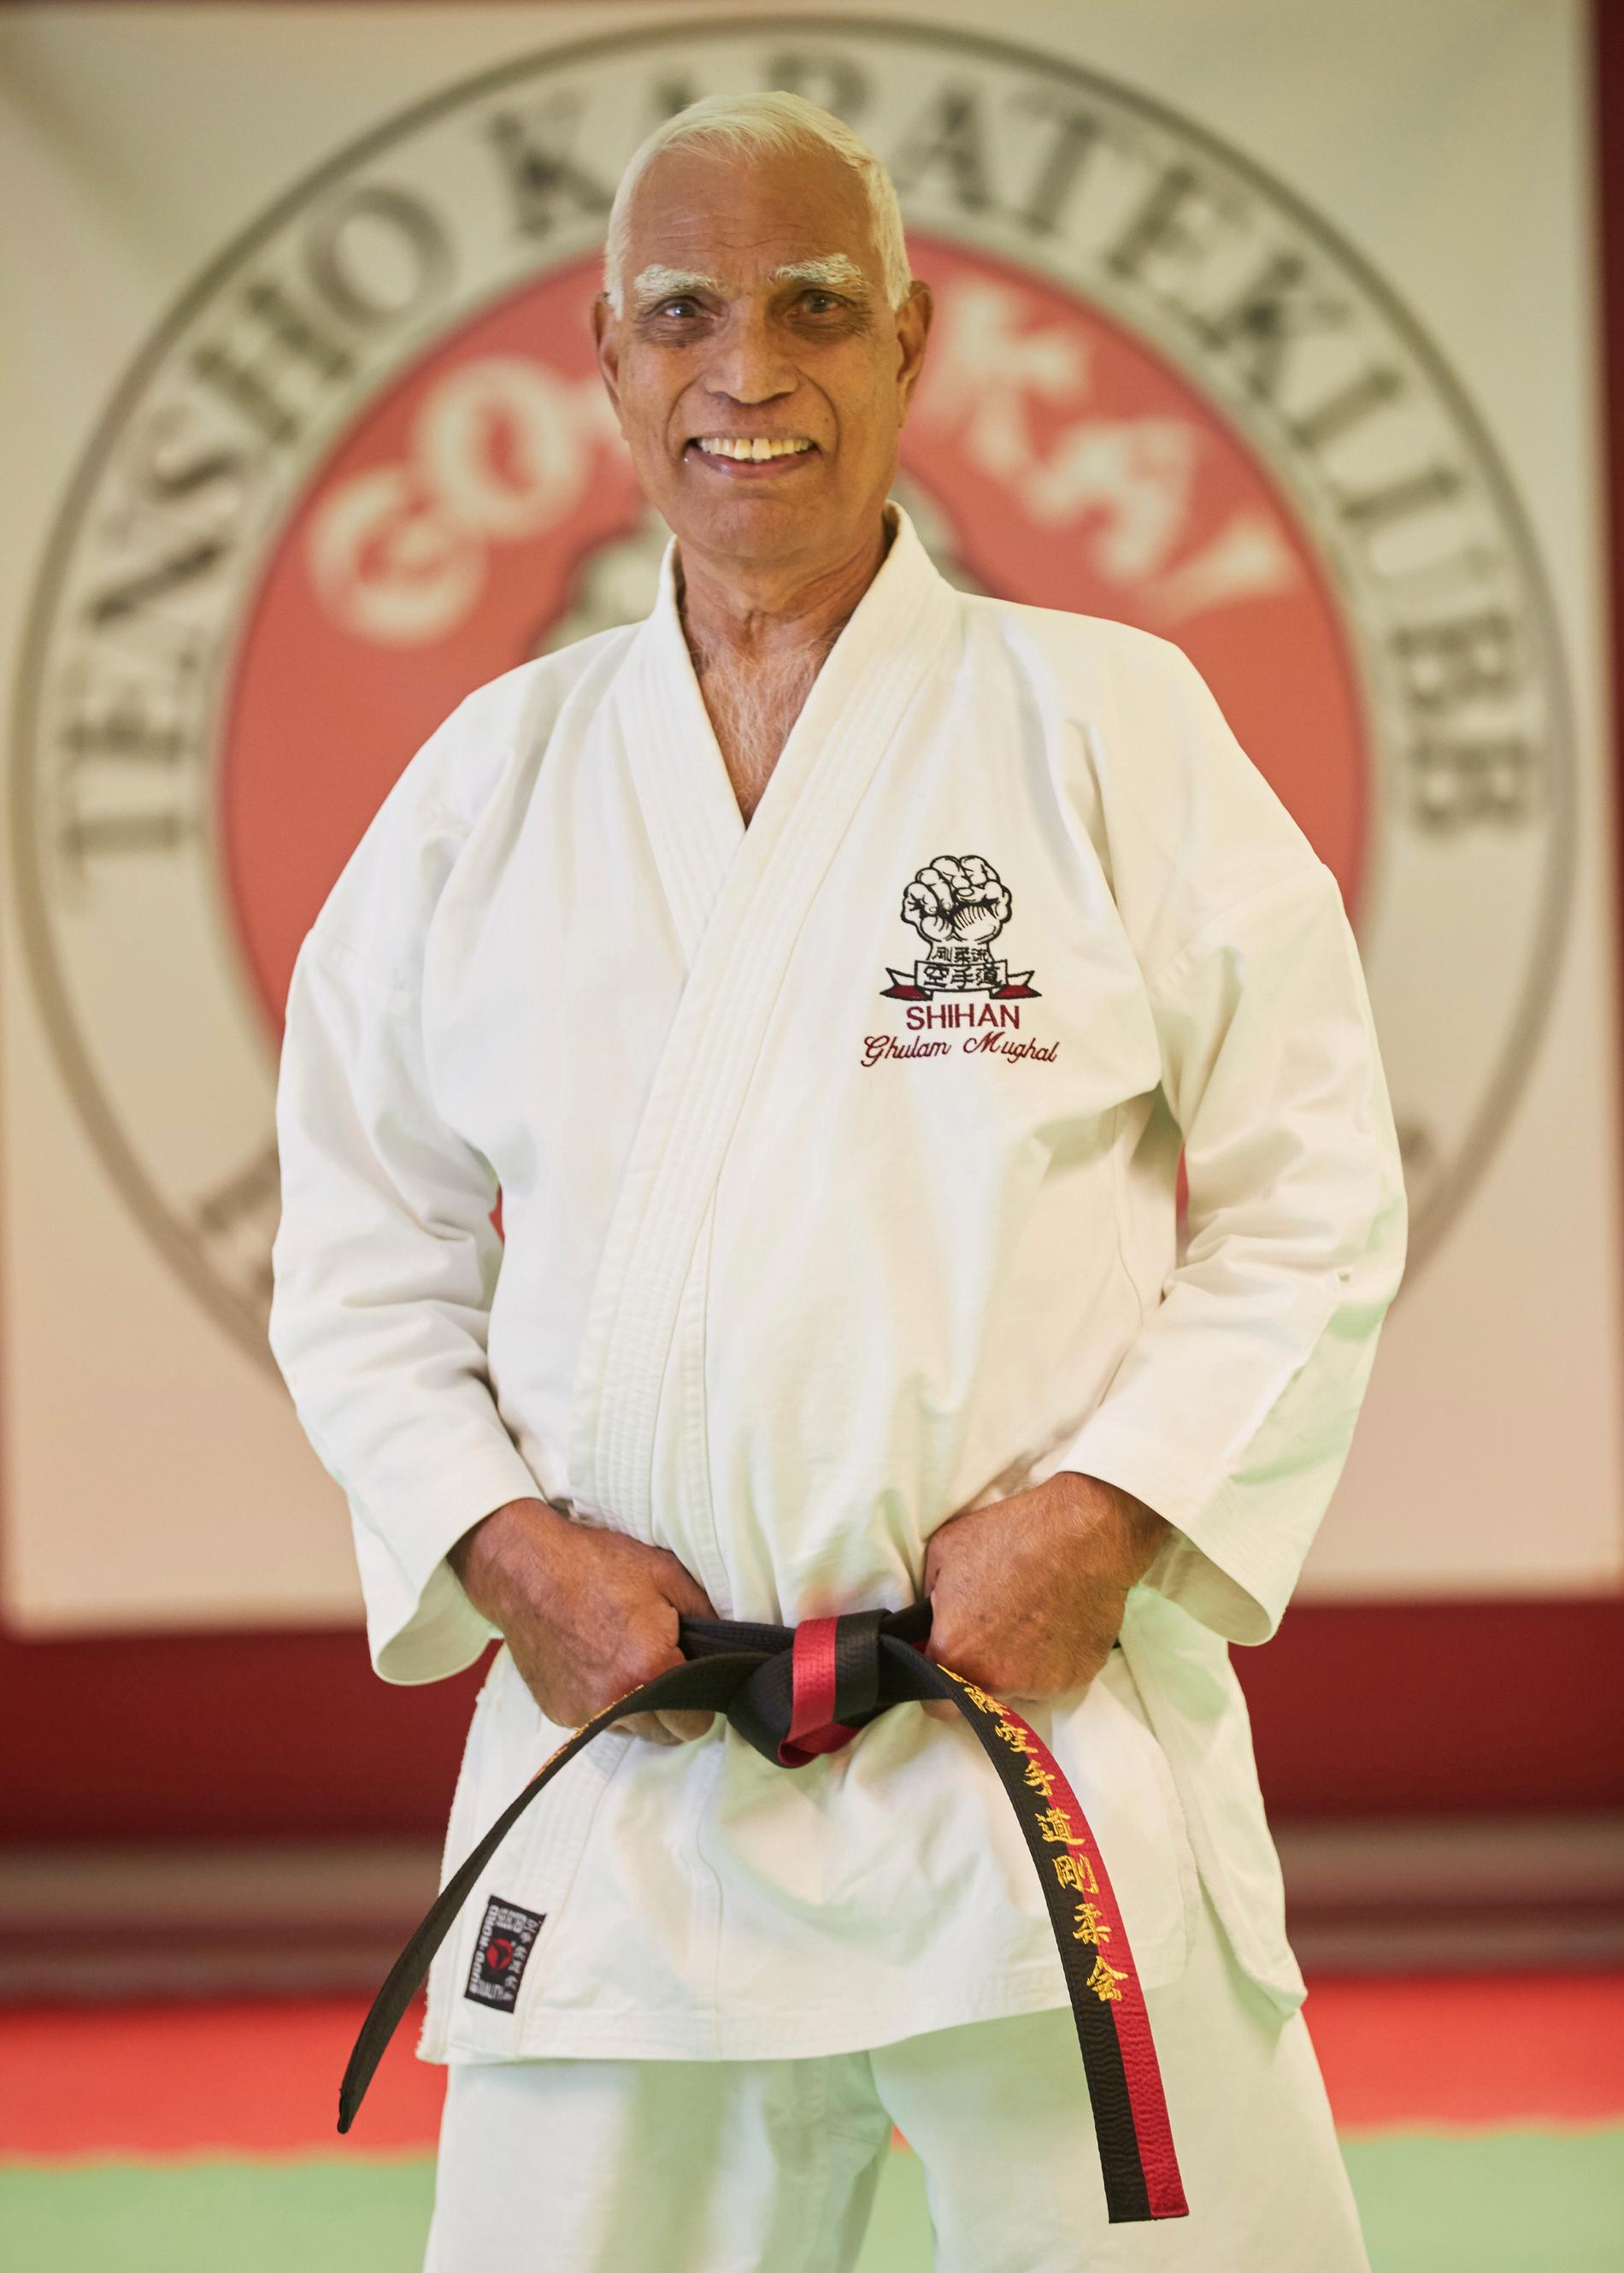 – Jag är pensionär, men jag har aldrig lämnat min karate. Karate går i första hand, säger Ghulam.